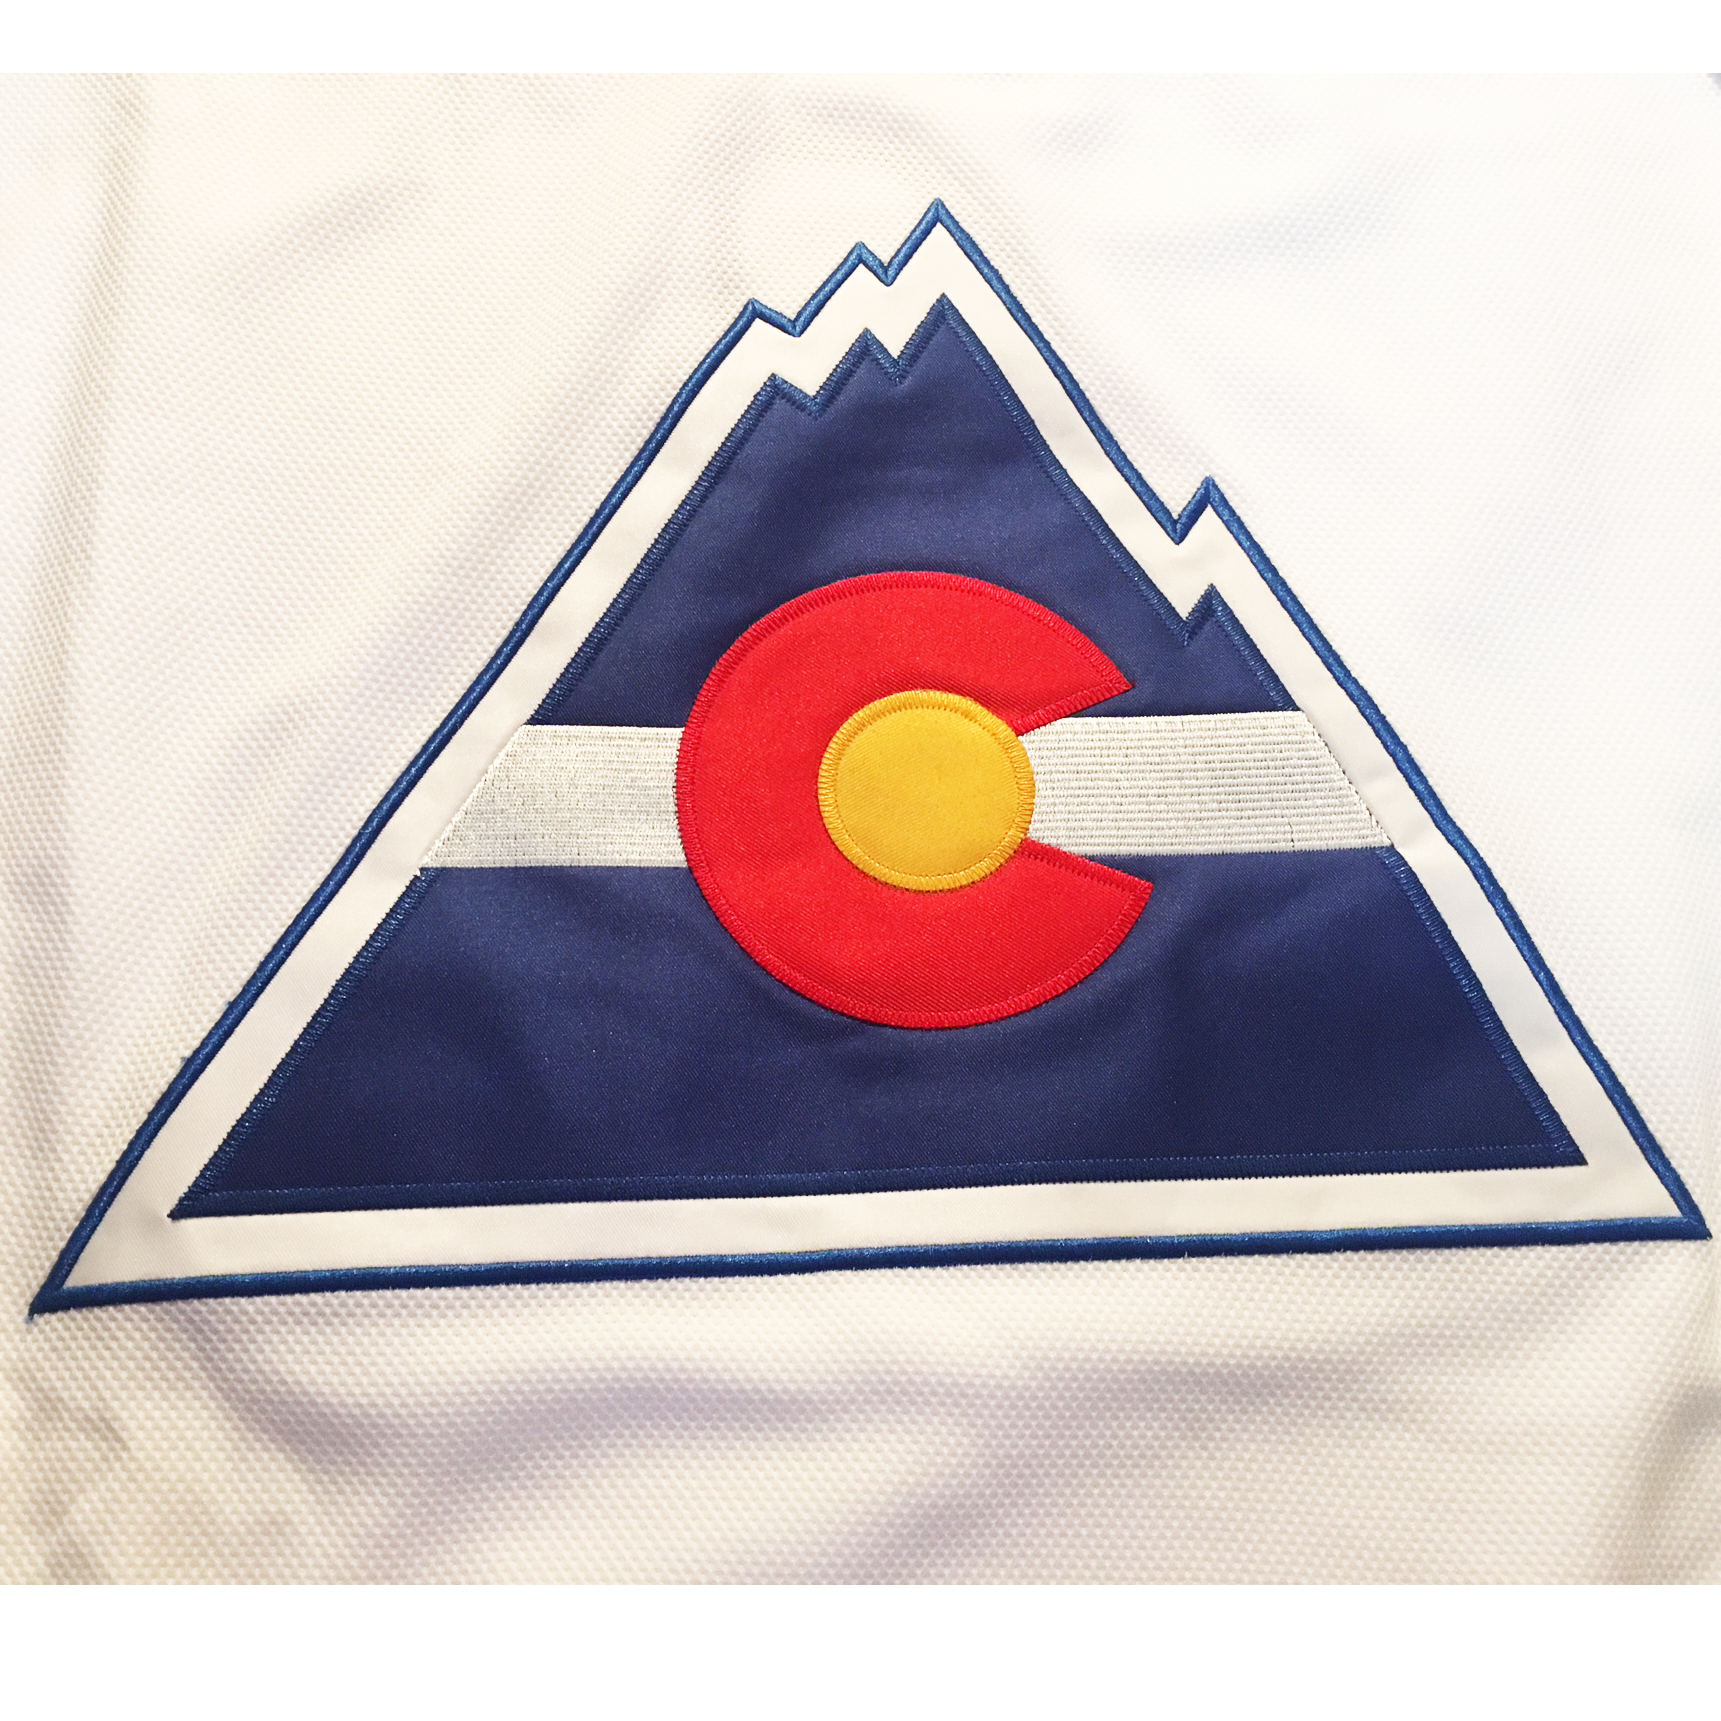 Colorado Rockies Jerseys in Colorado Rockies Team Shop 